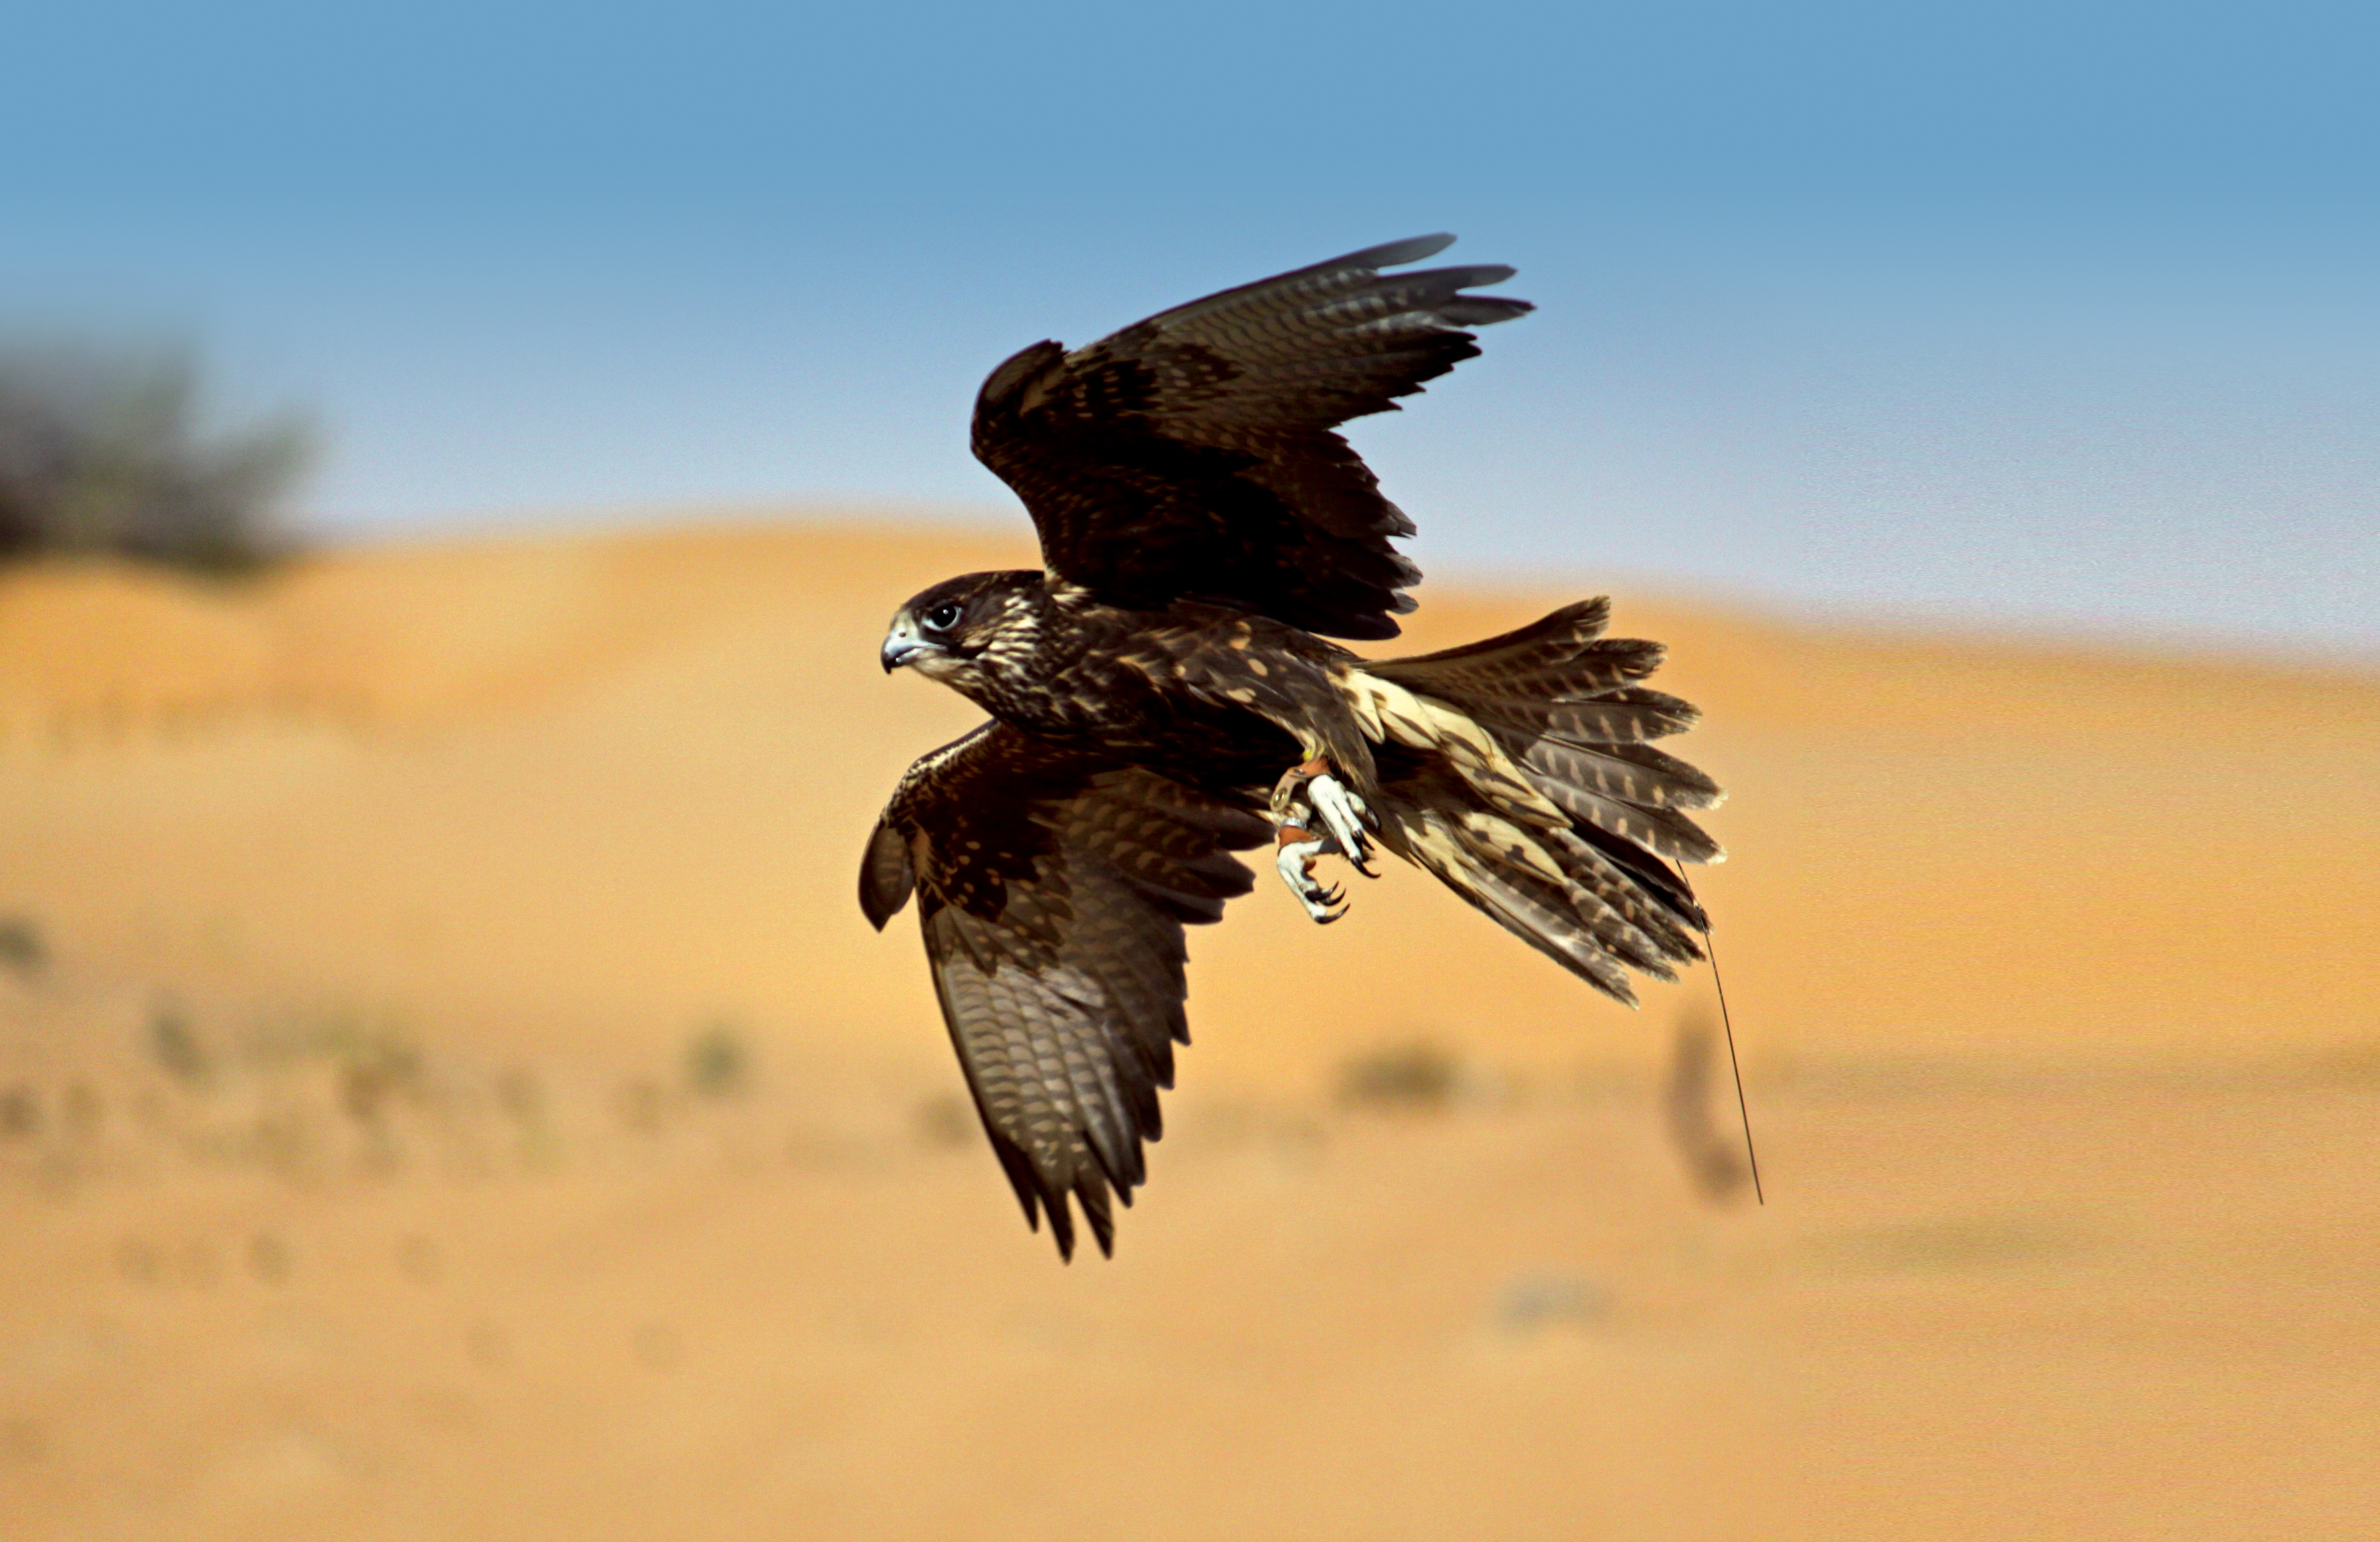 Ethical Falcon Shows in Dubai